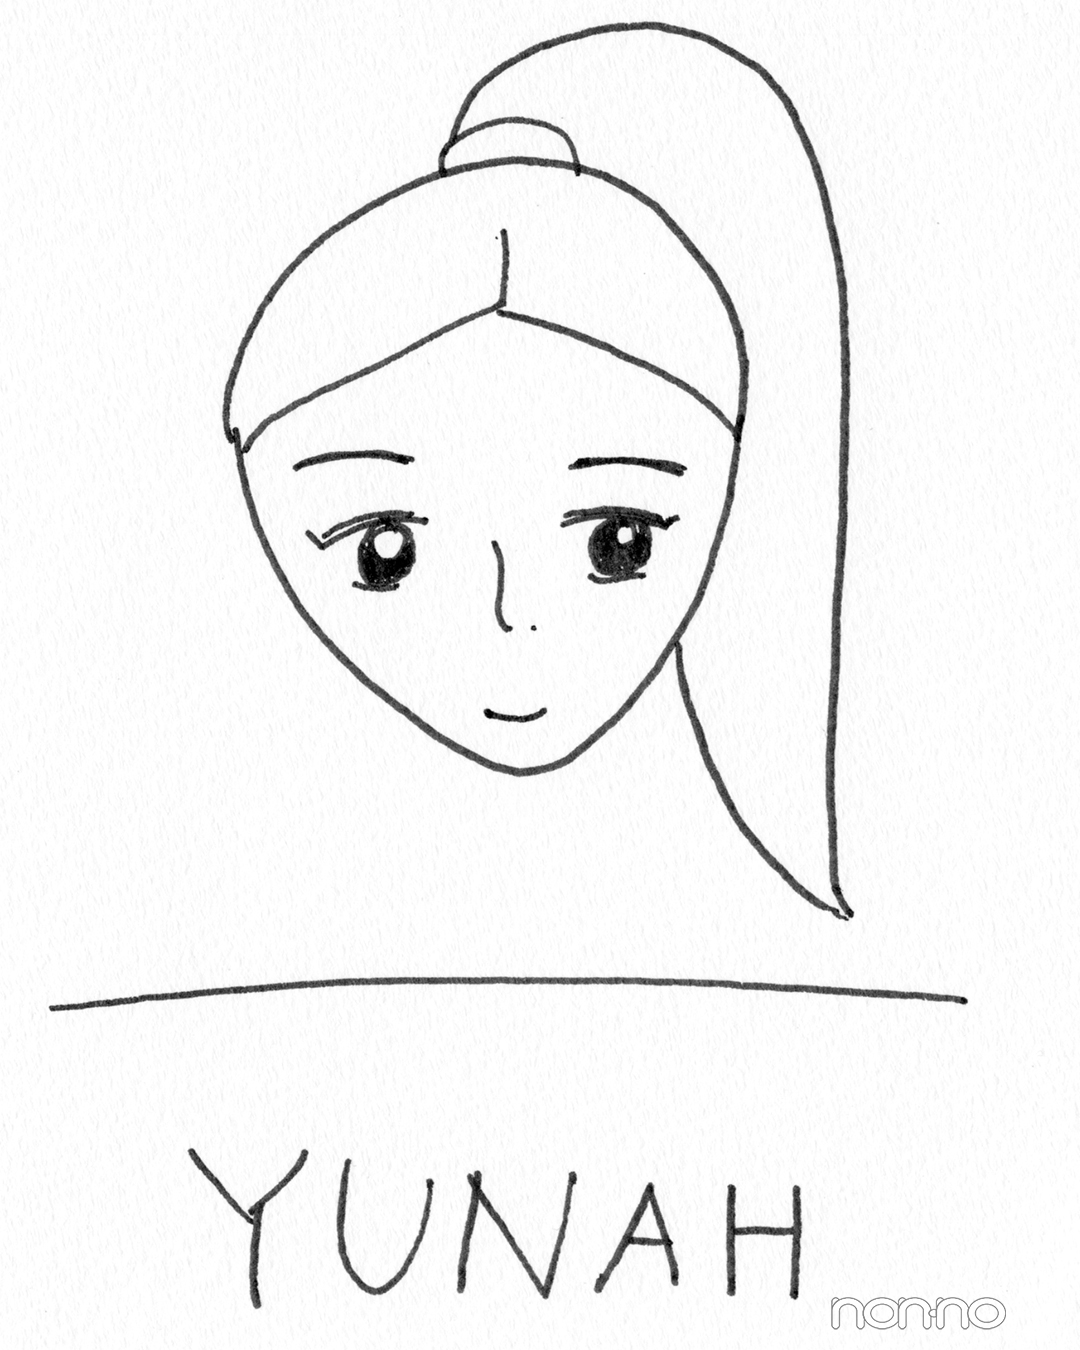 YUNAHの自画像